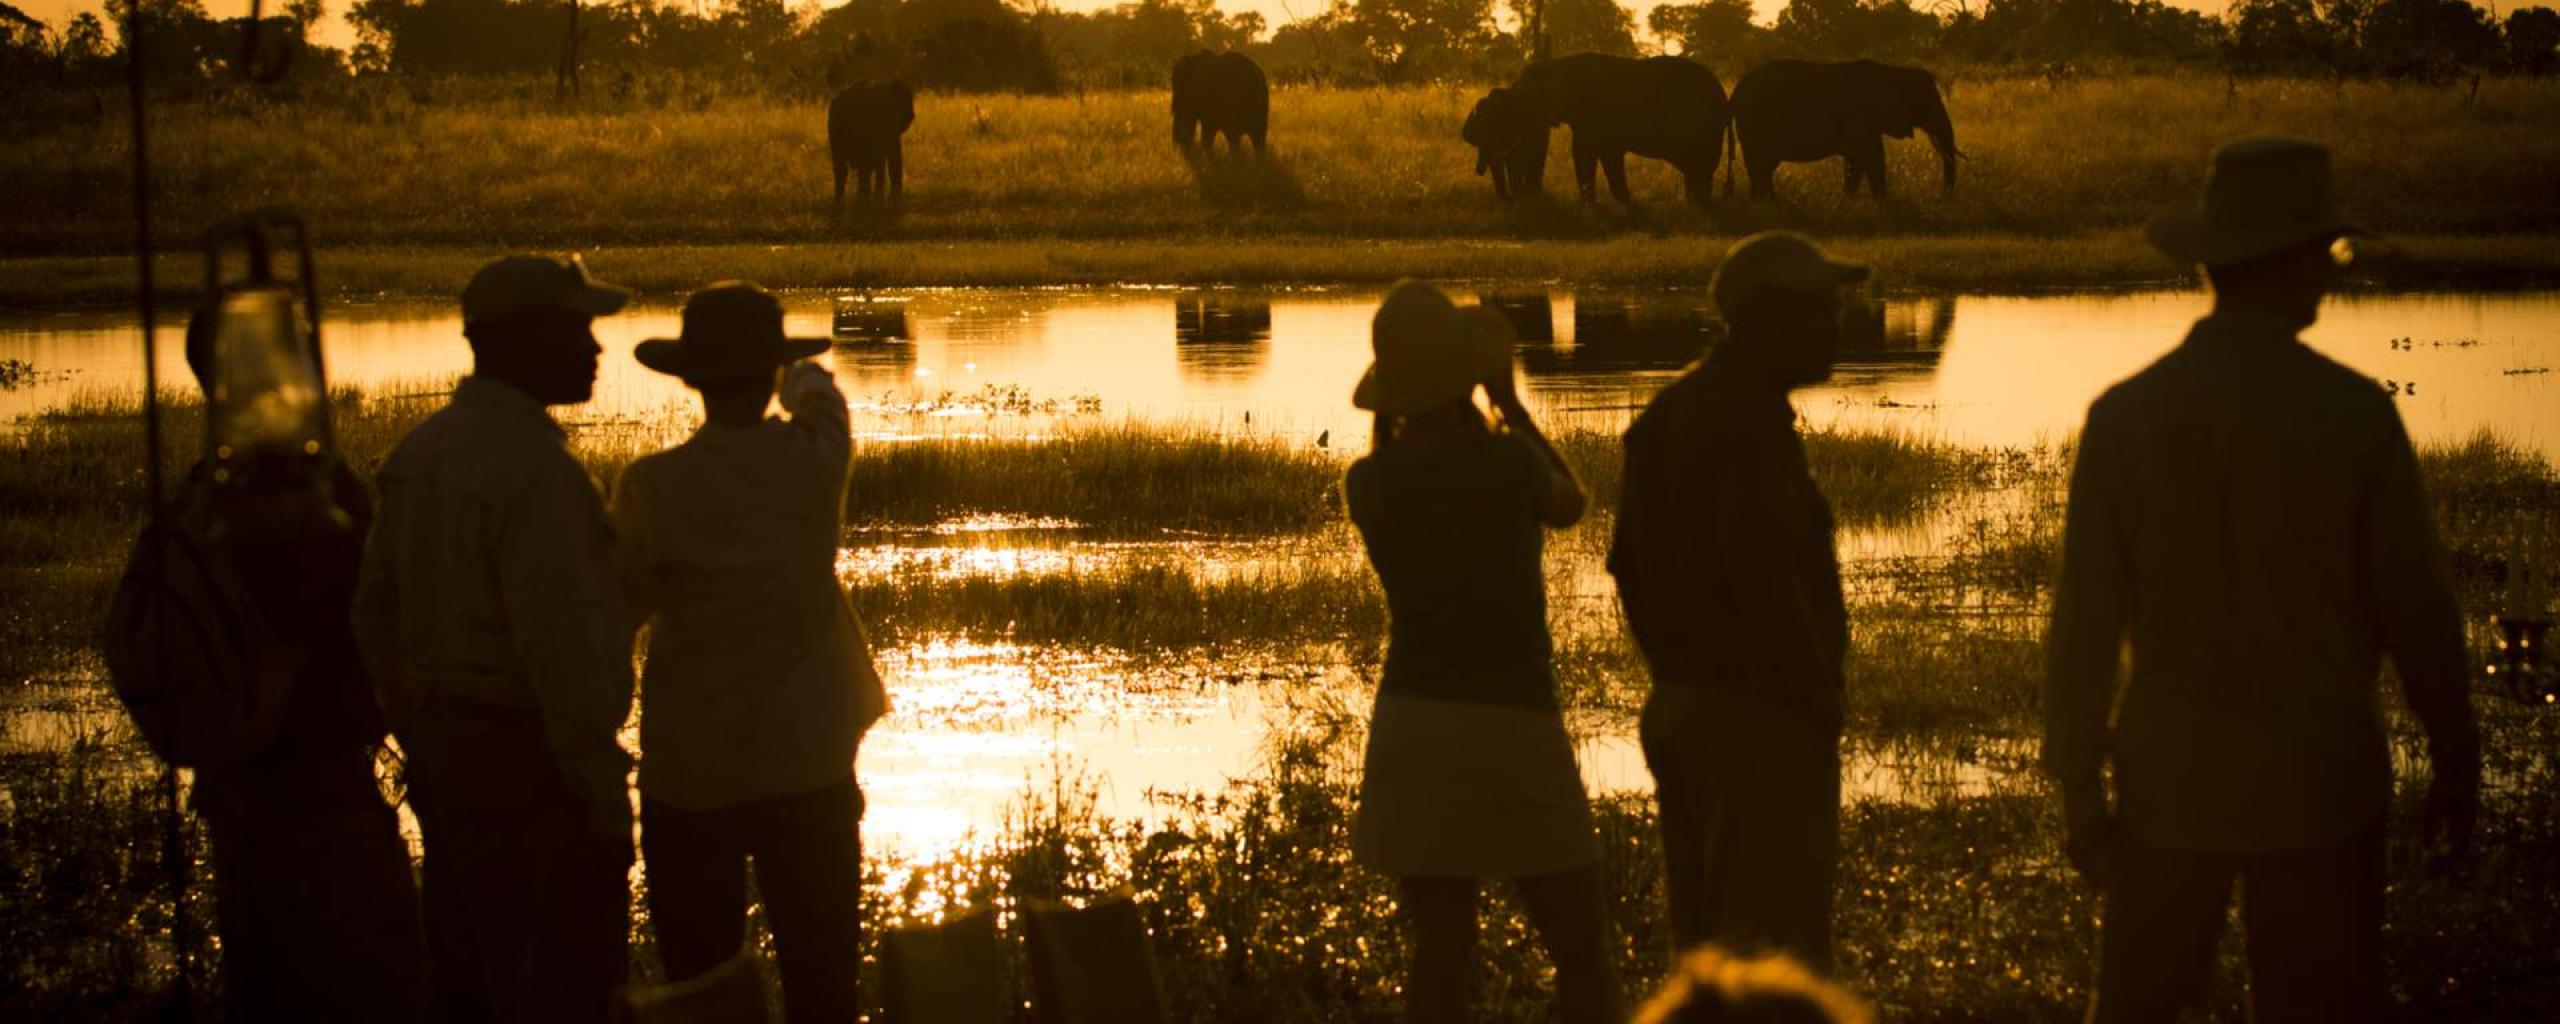 Abu Camp - Okavango Delta